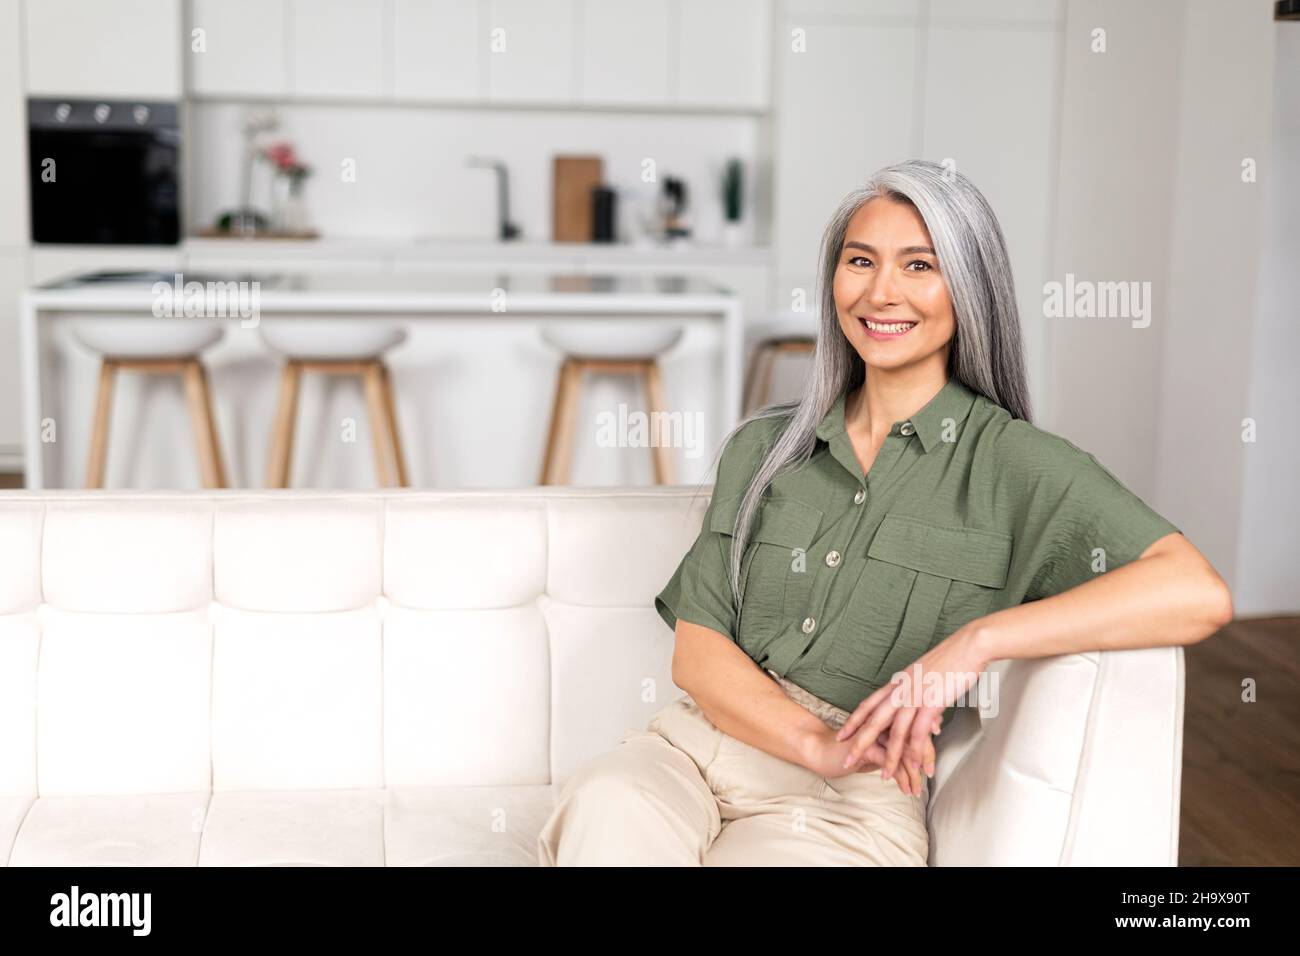 Ritratto di attraente donna di mezza età con lunghi capelli d'argento seduta in appartamento moderno, metà di età multirazziale asiatico donna riposo a casa, guardando la macchina fotografica e sorridendo con ampio sorriso toothy Foto Stock